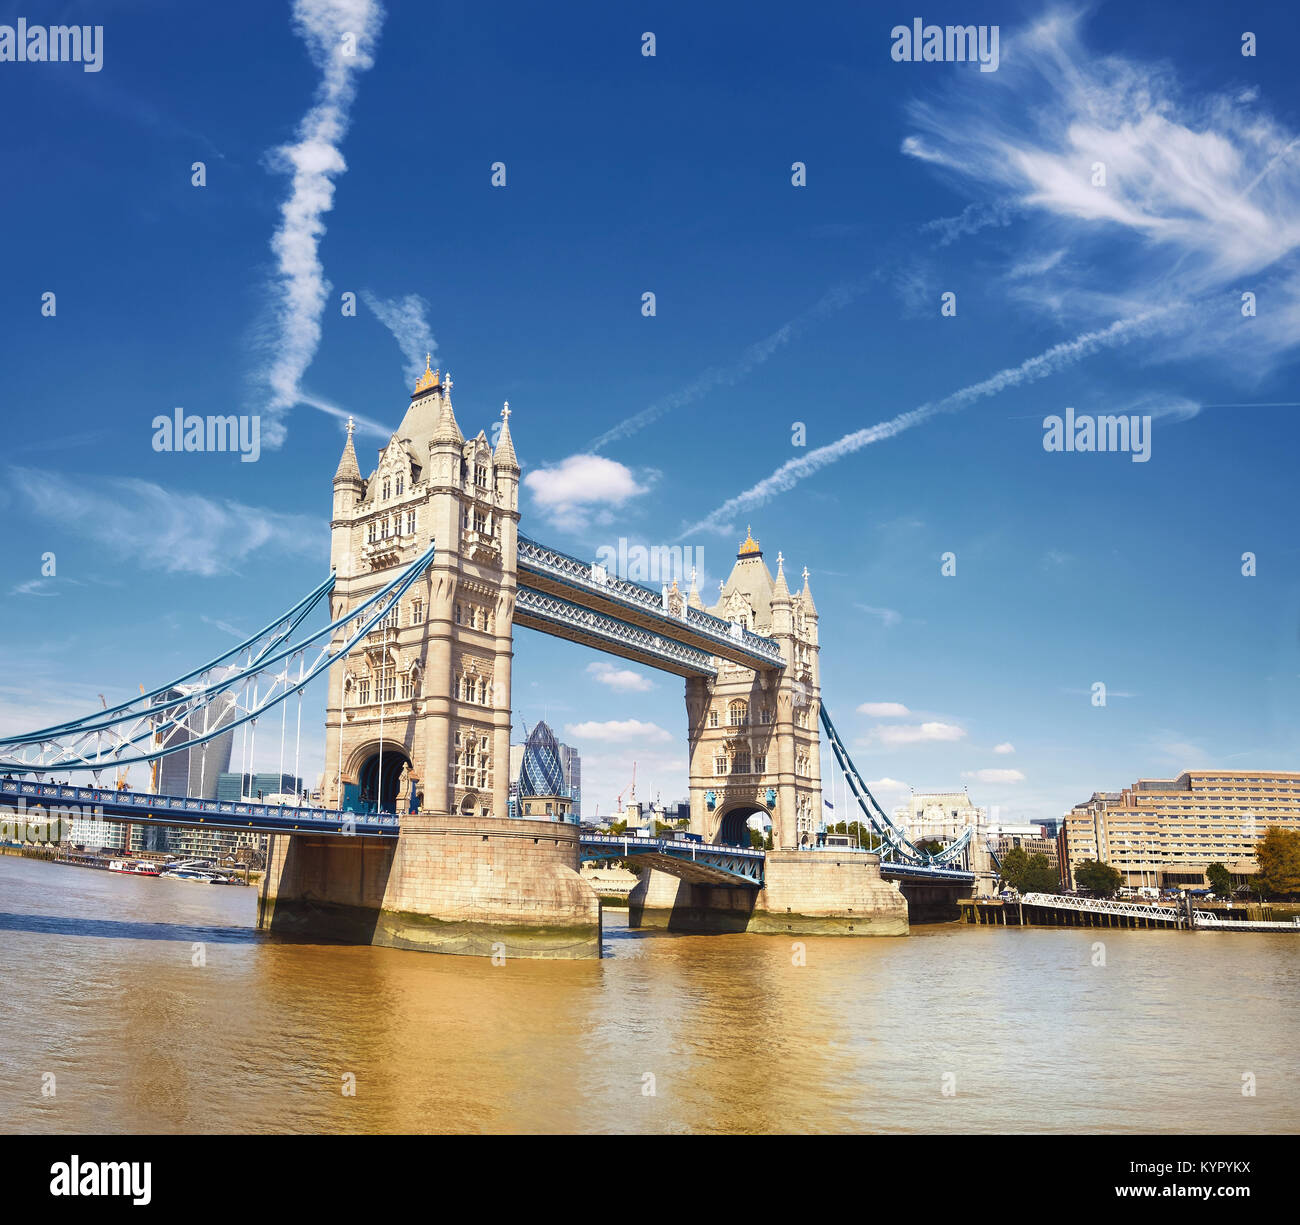 Die Tower Bridge auf einem hellen, sonnigen Tag in London, England, UK. Panoramablick auf das Bild. Stockfoto